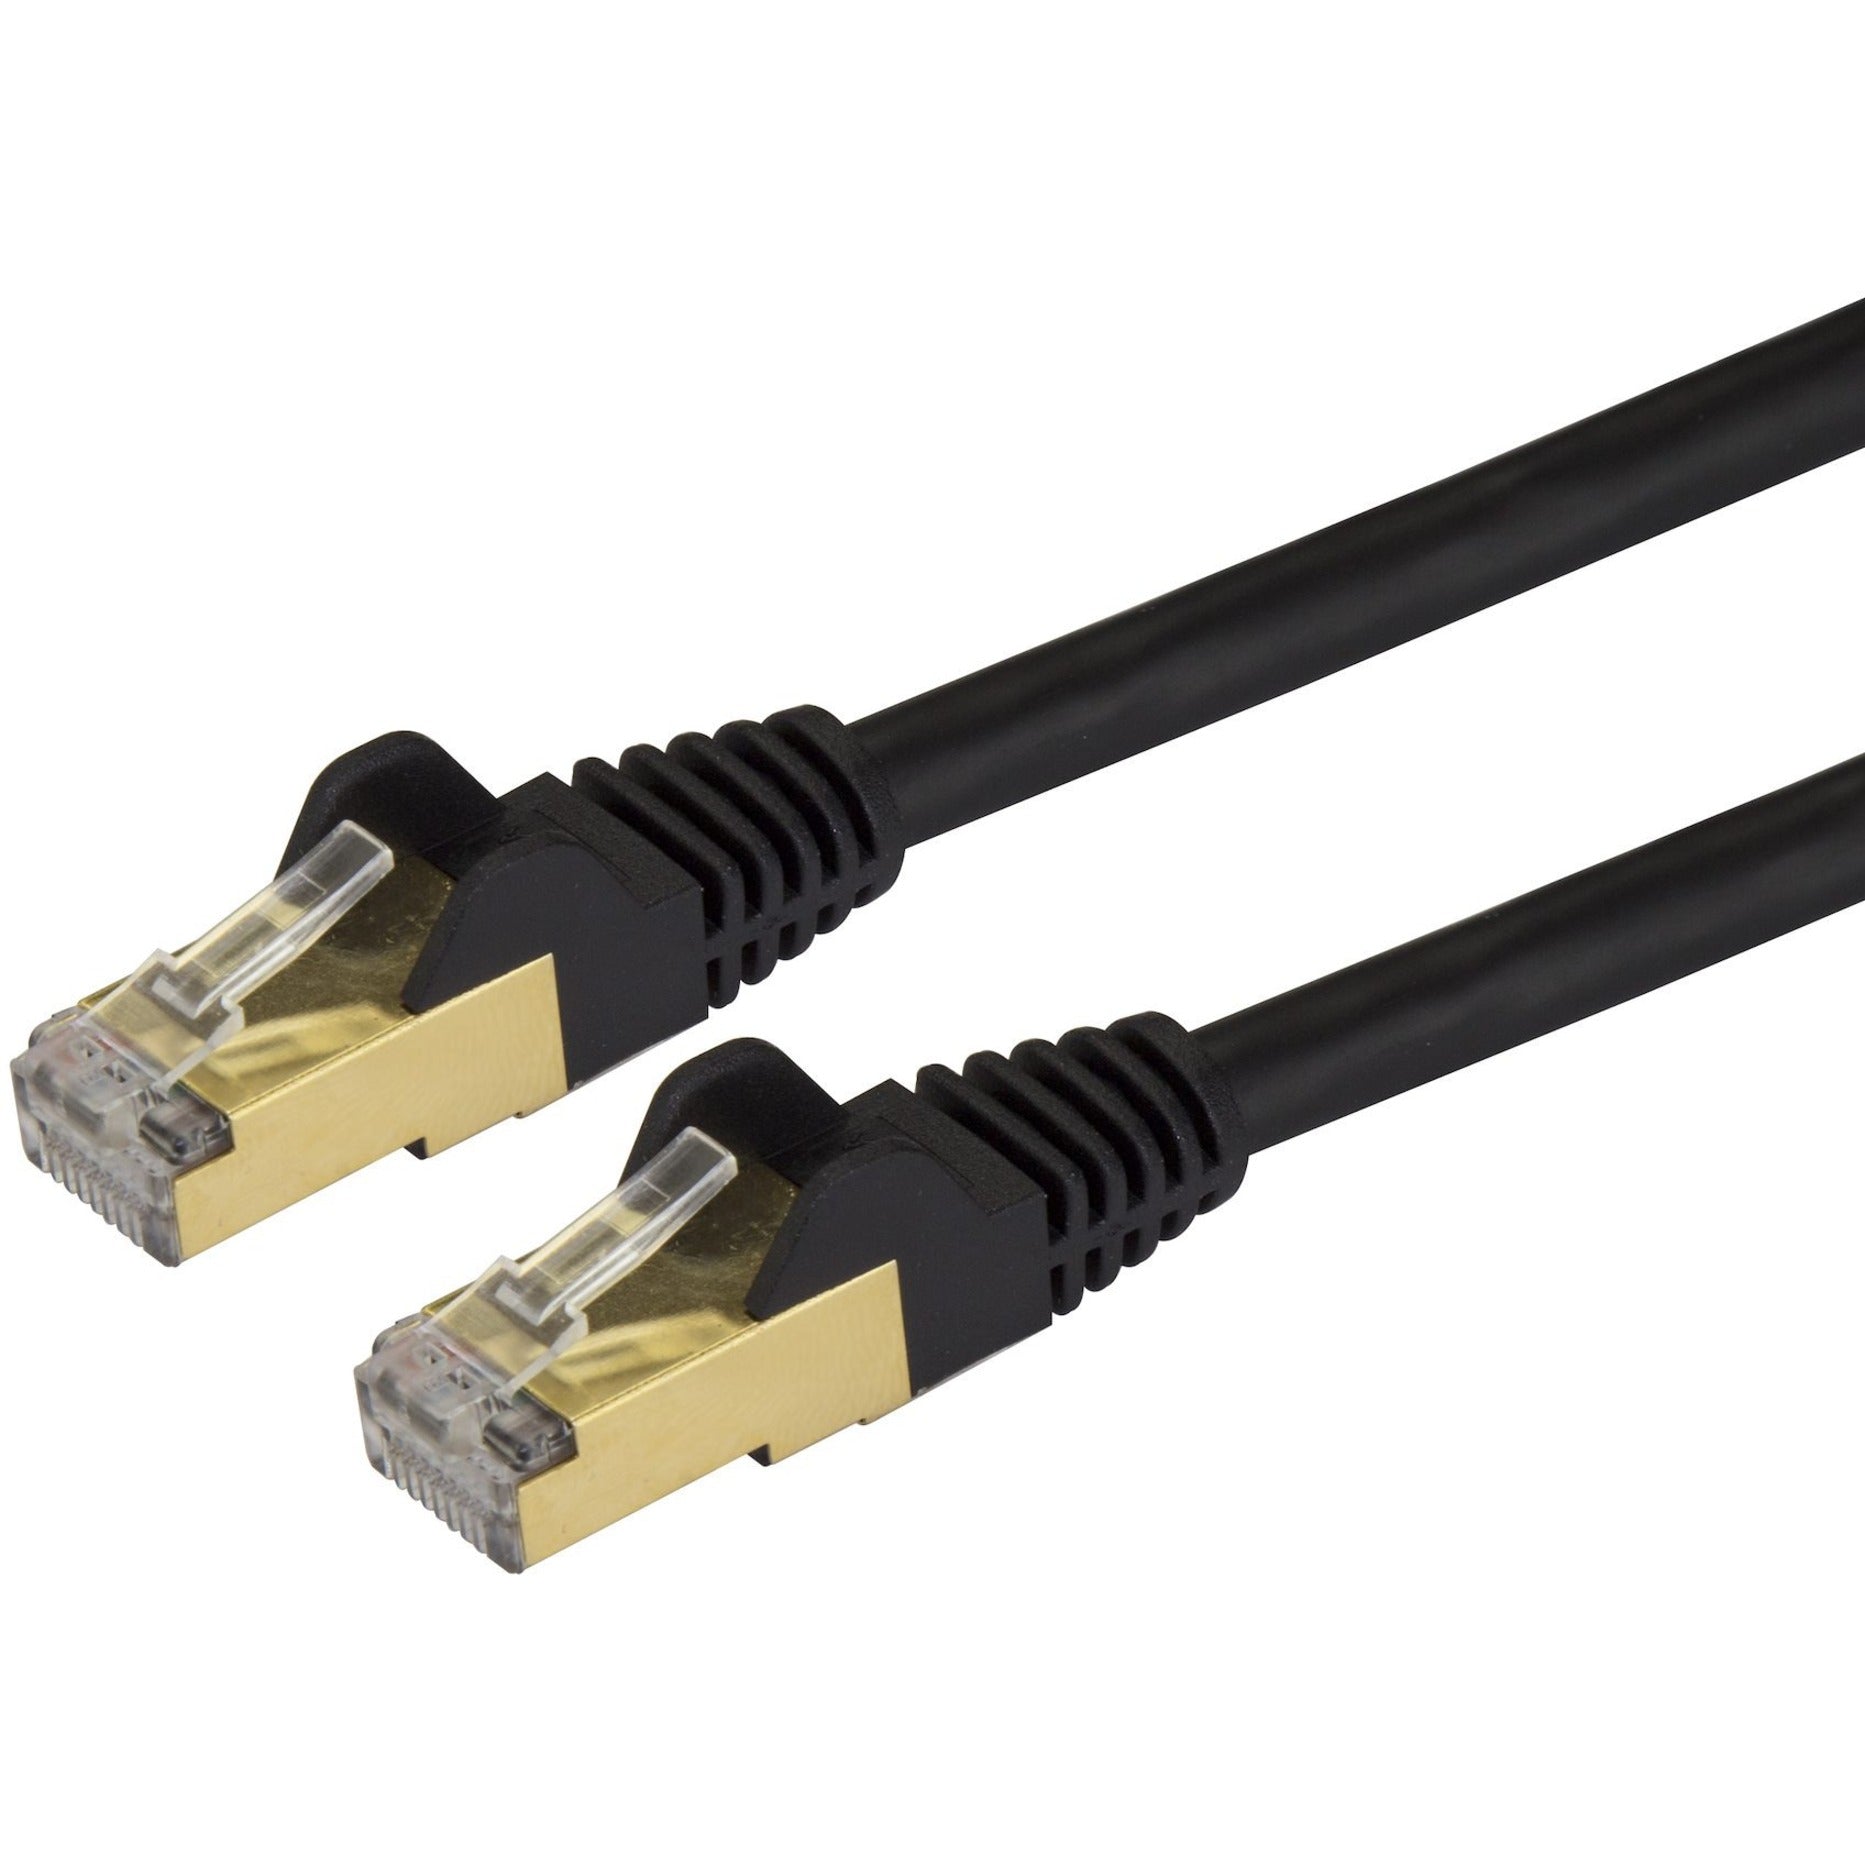 StarTech.com C6ASPAT5BK Cable de conexión Ethernet Cat6a - Blindado (STP) - 152 m Negro Cable Ethernet RJ45 sin enganches